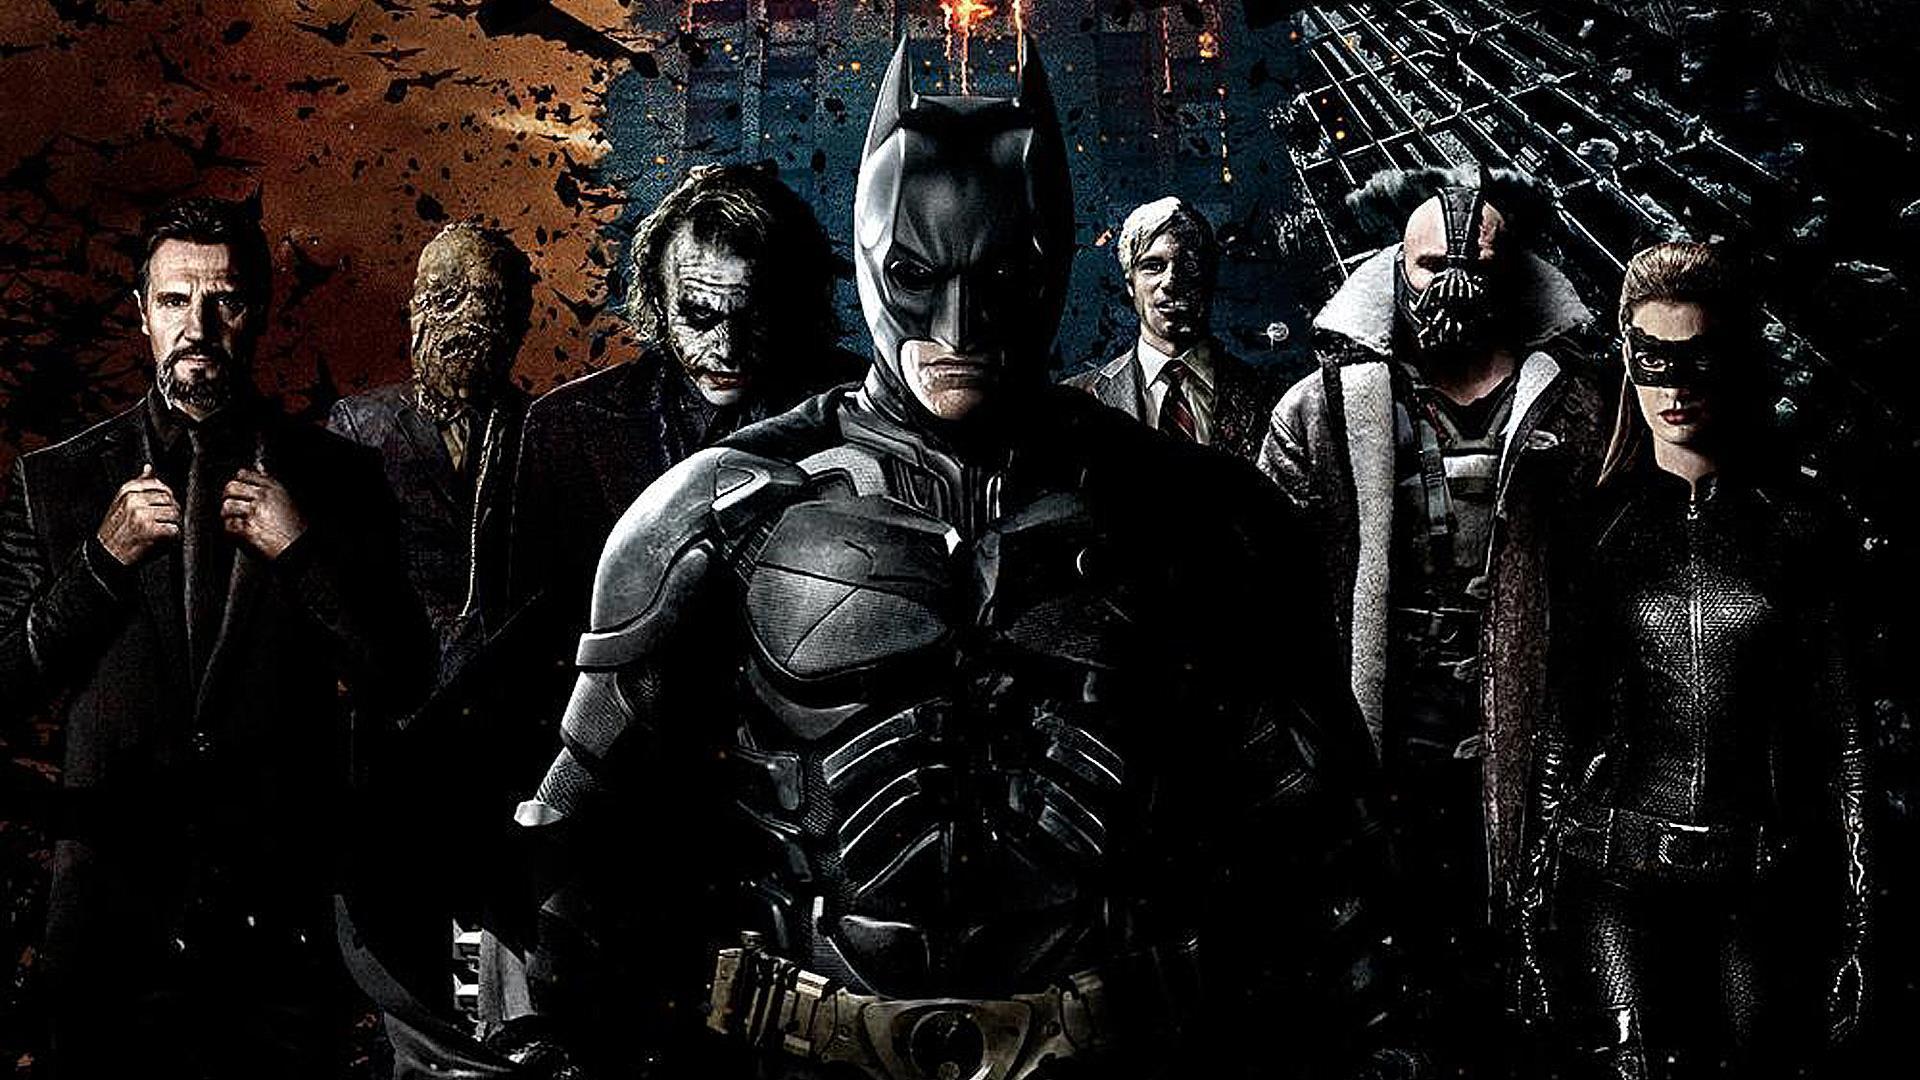 Best Batman: The Dark Knight New HD Wallpaper Wallpaper